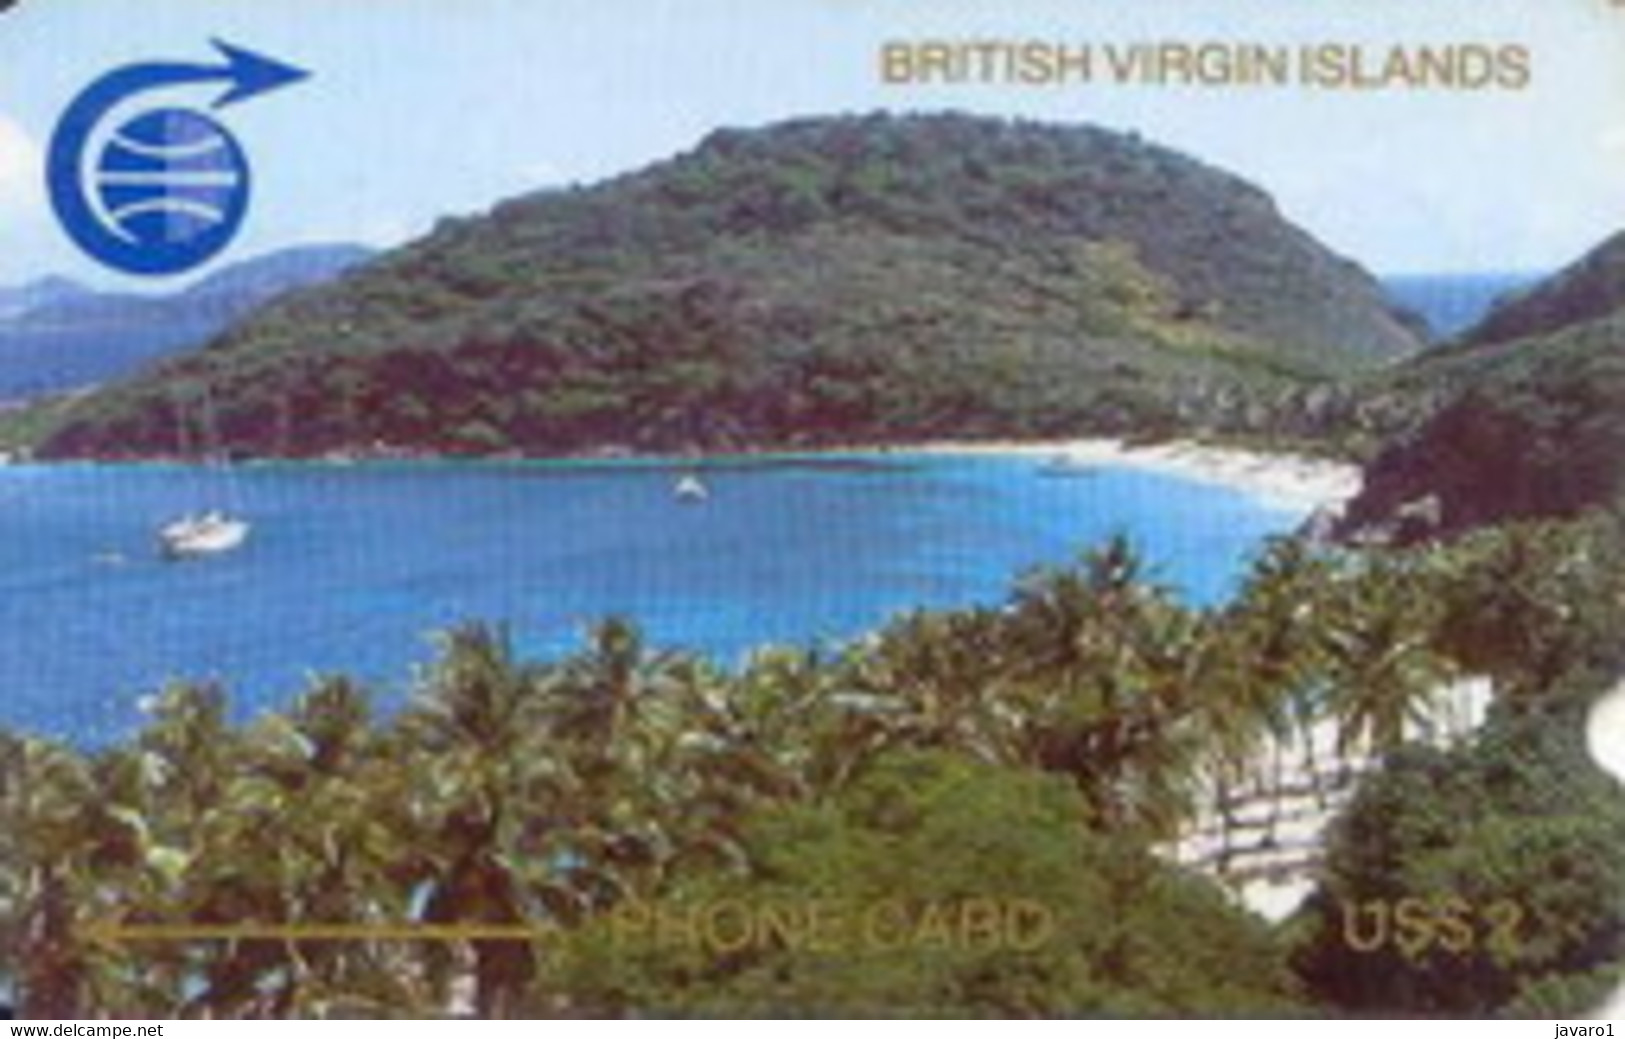 BVI : 001C US$10 (Large Notch) MINT - Vierges (îles)